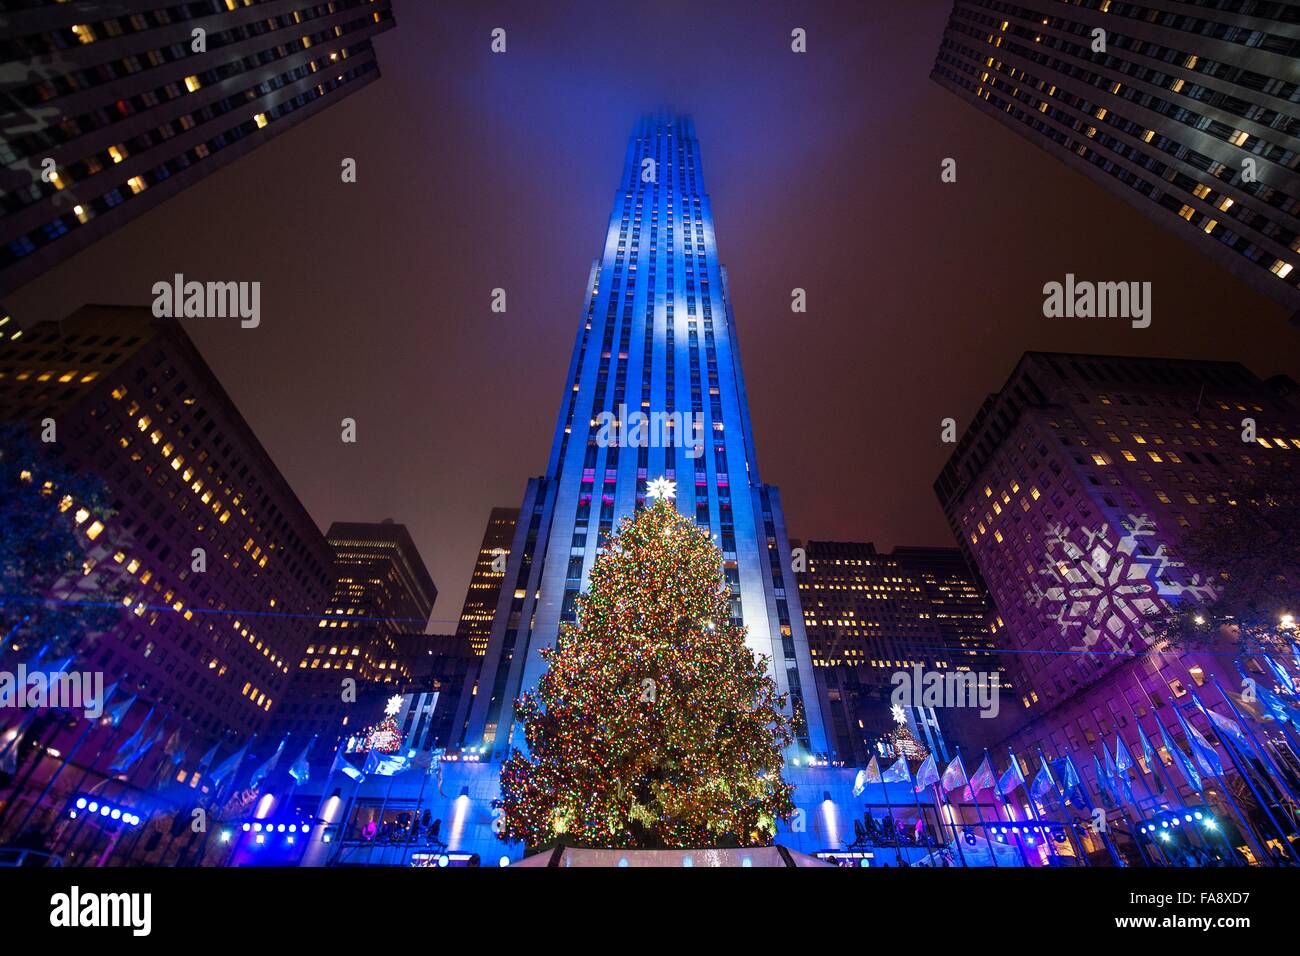 Albero di natale cerimonia di illuminazione in corrispondenza di roccia 30 Dicembre 2, 2015 la città di New York, NY. Questo è l'ottantatreesimo anno dell'evento che viene trasmesso in diretta dalla televisione NBC. Foto Stock